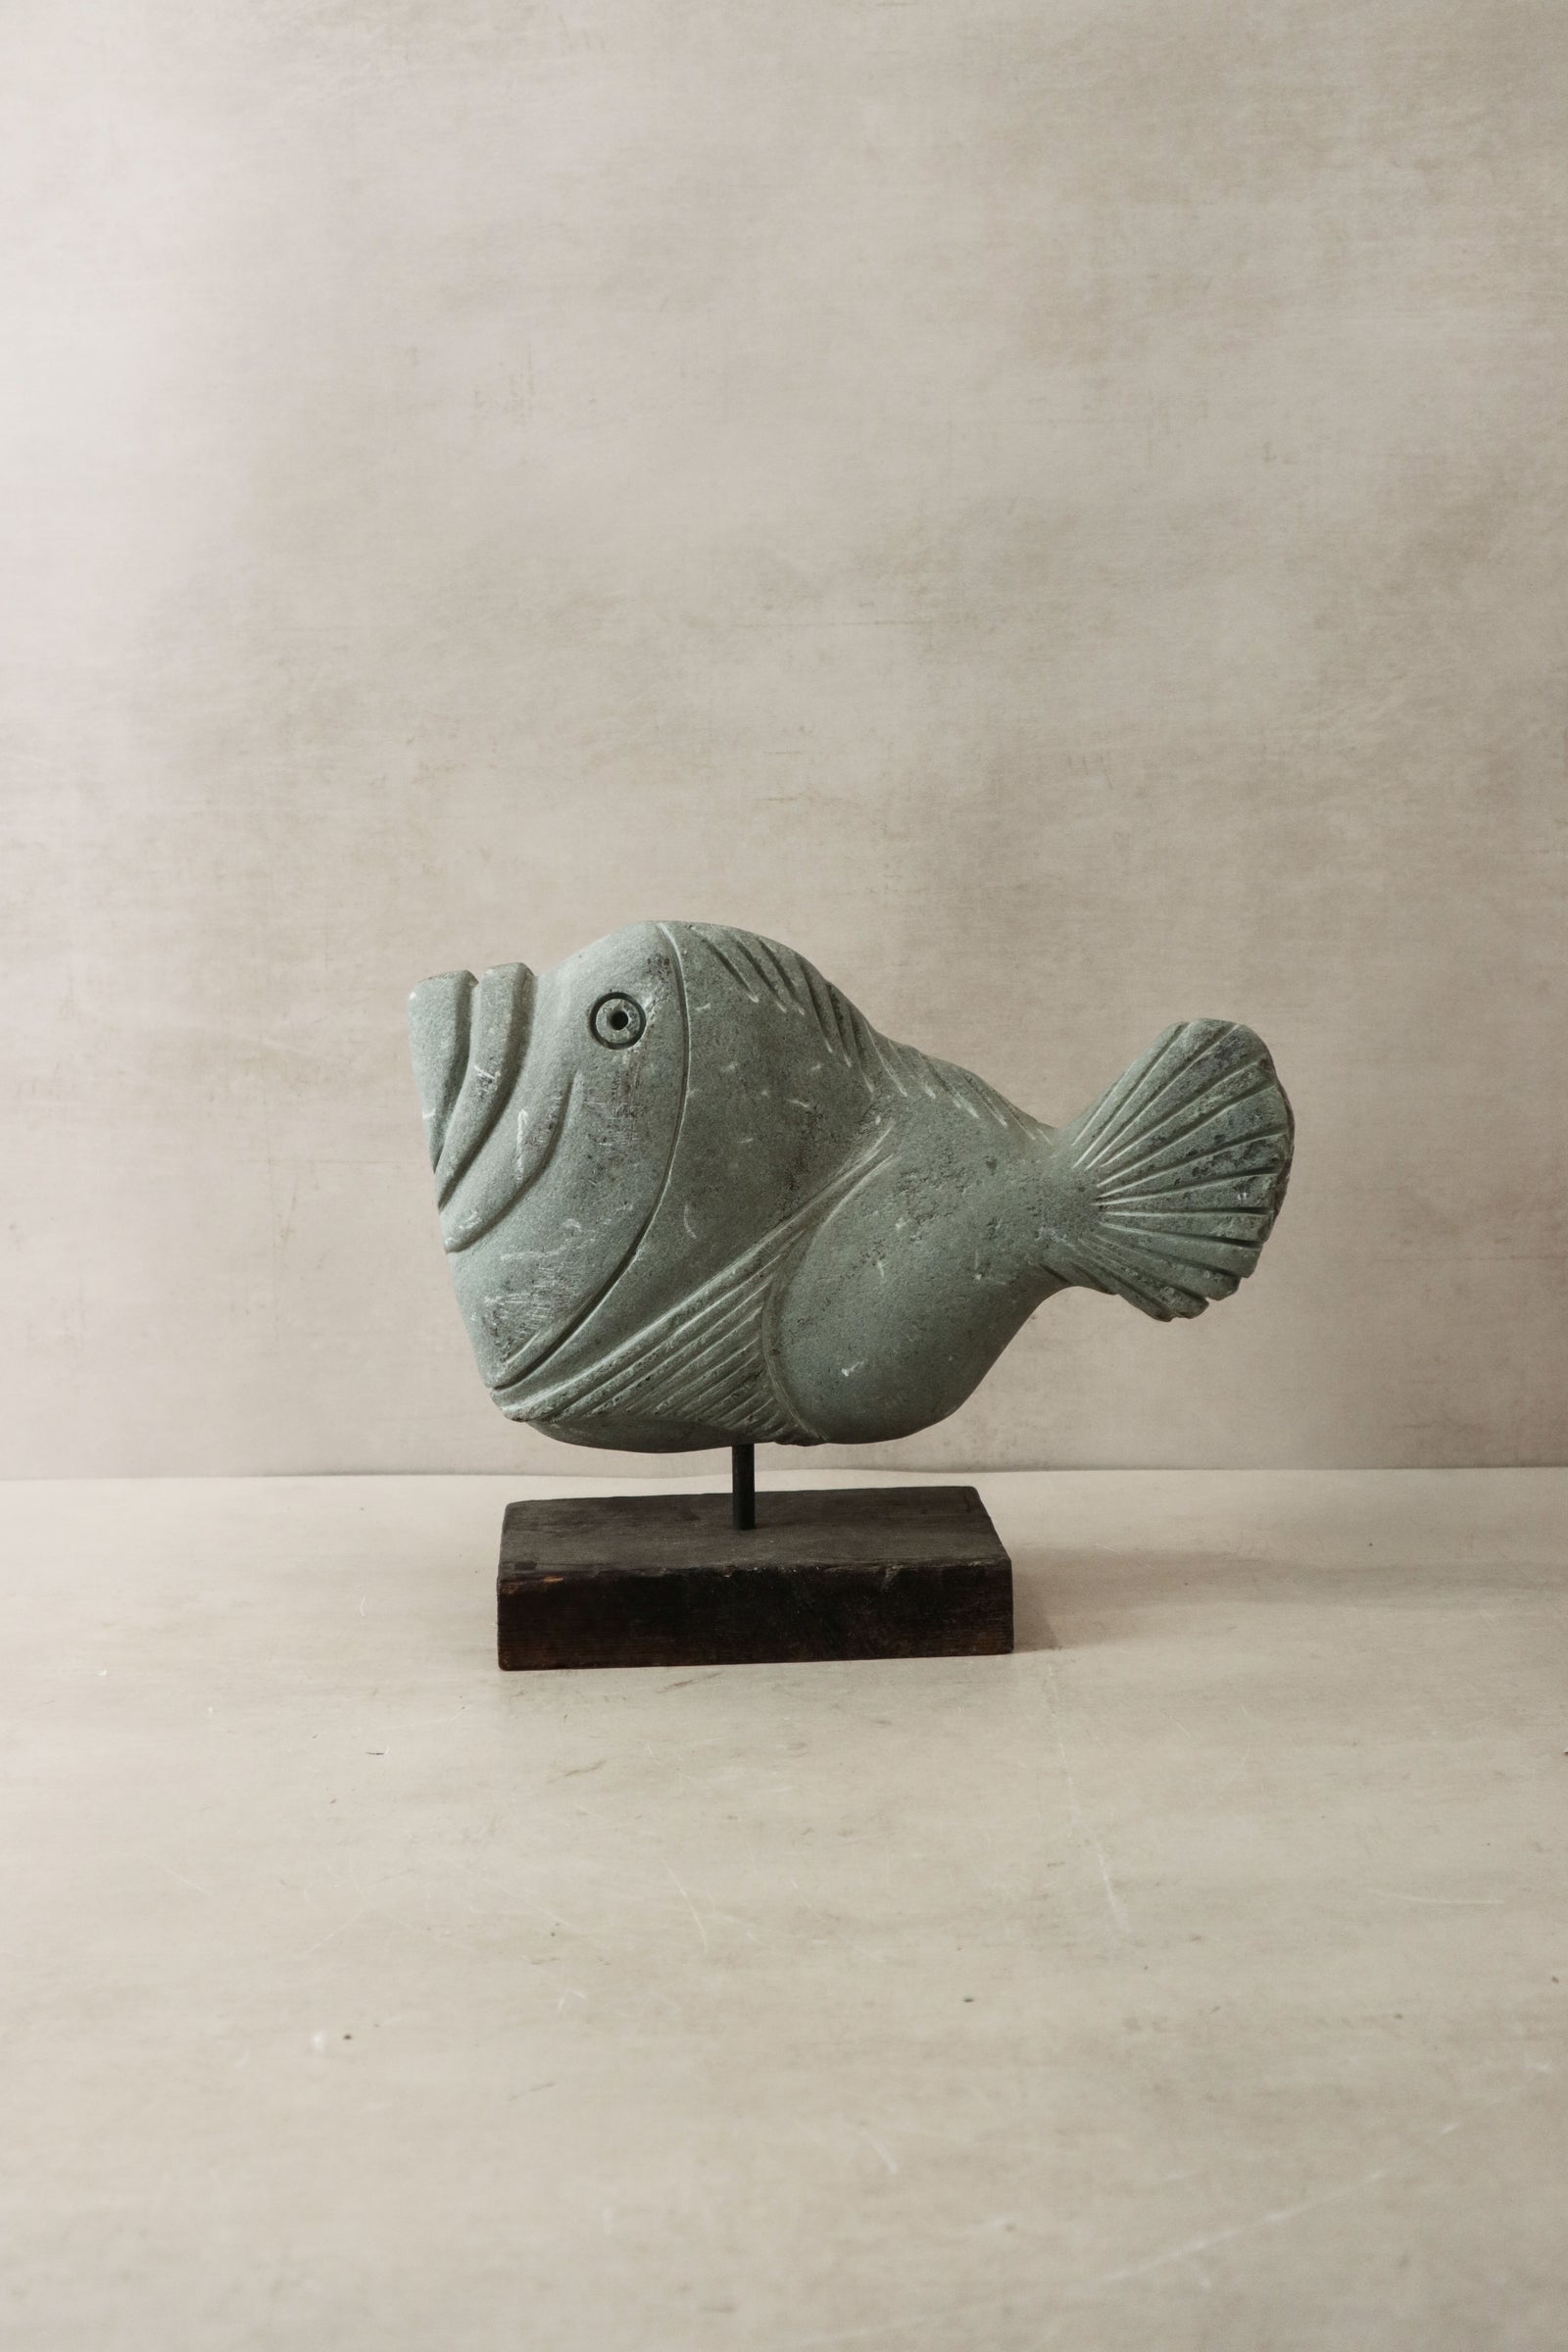 Stone Fish Sculpture - Zimbabwe - 34.1